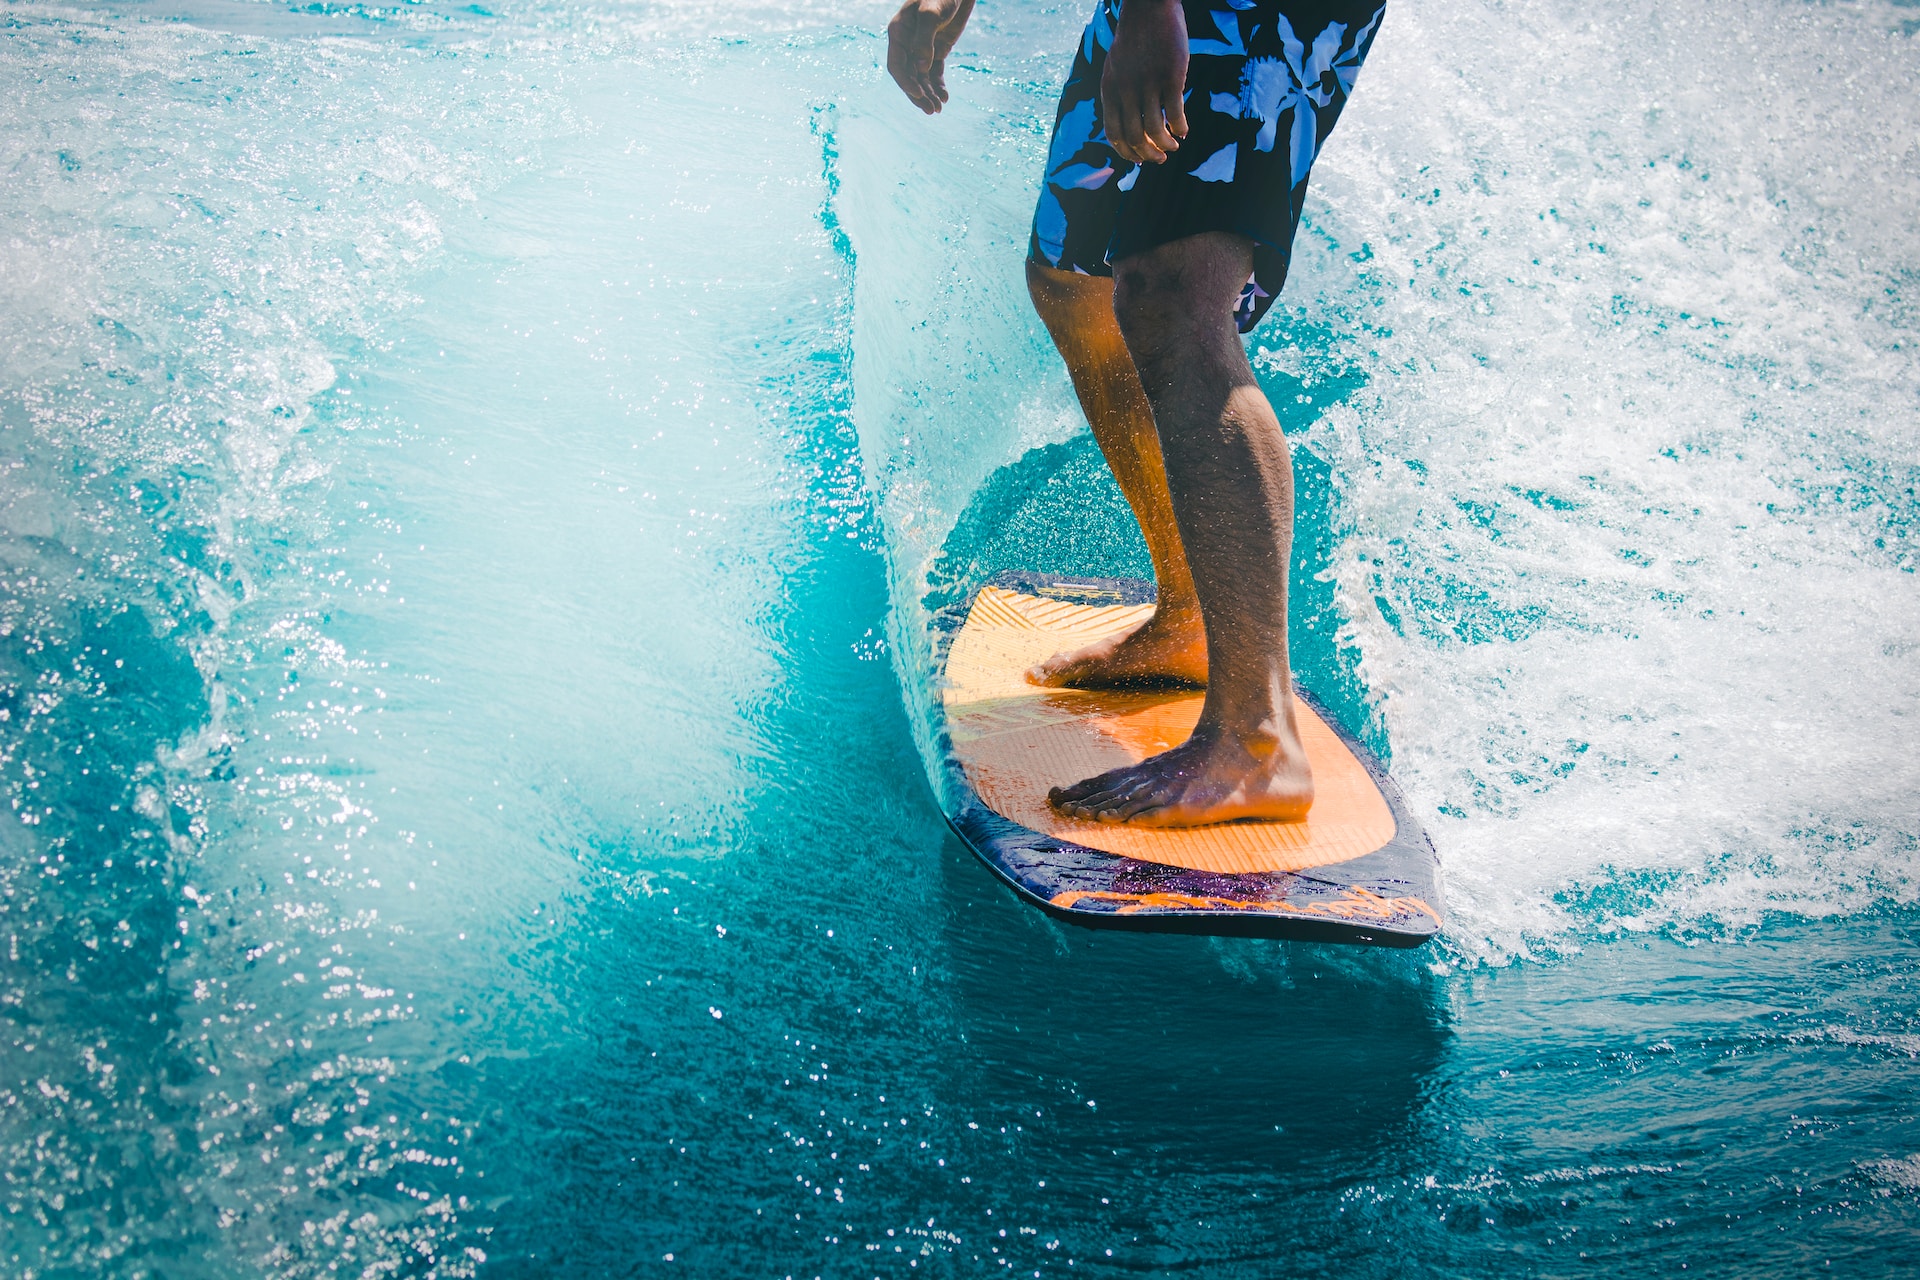 Disfruta del surf en todos sus niveles: 33 spots para experimentar la emoción del surf, bodyboard y paddle surf y convertirlo en tu estilo de vida